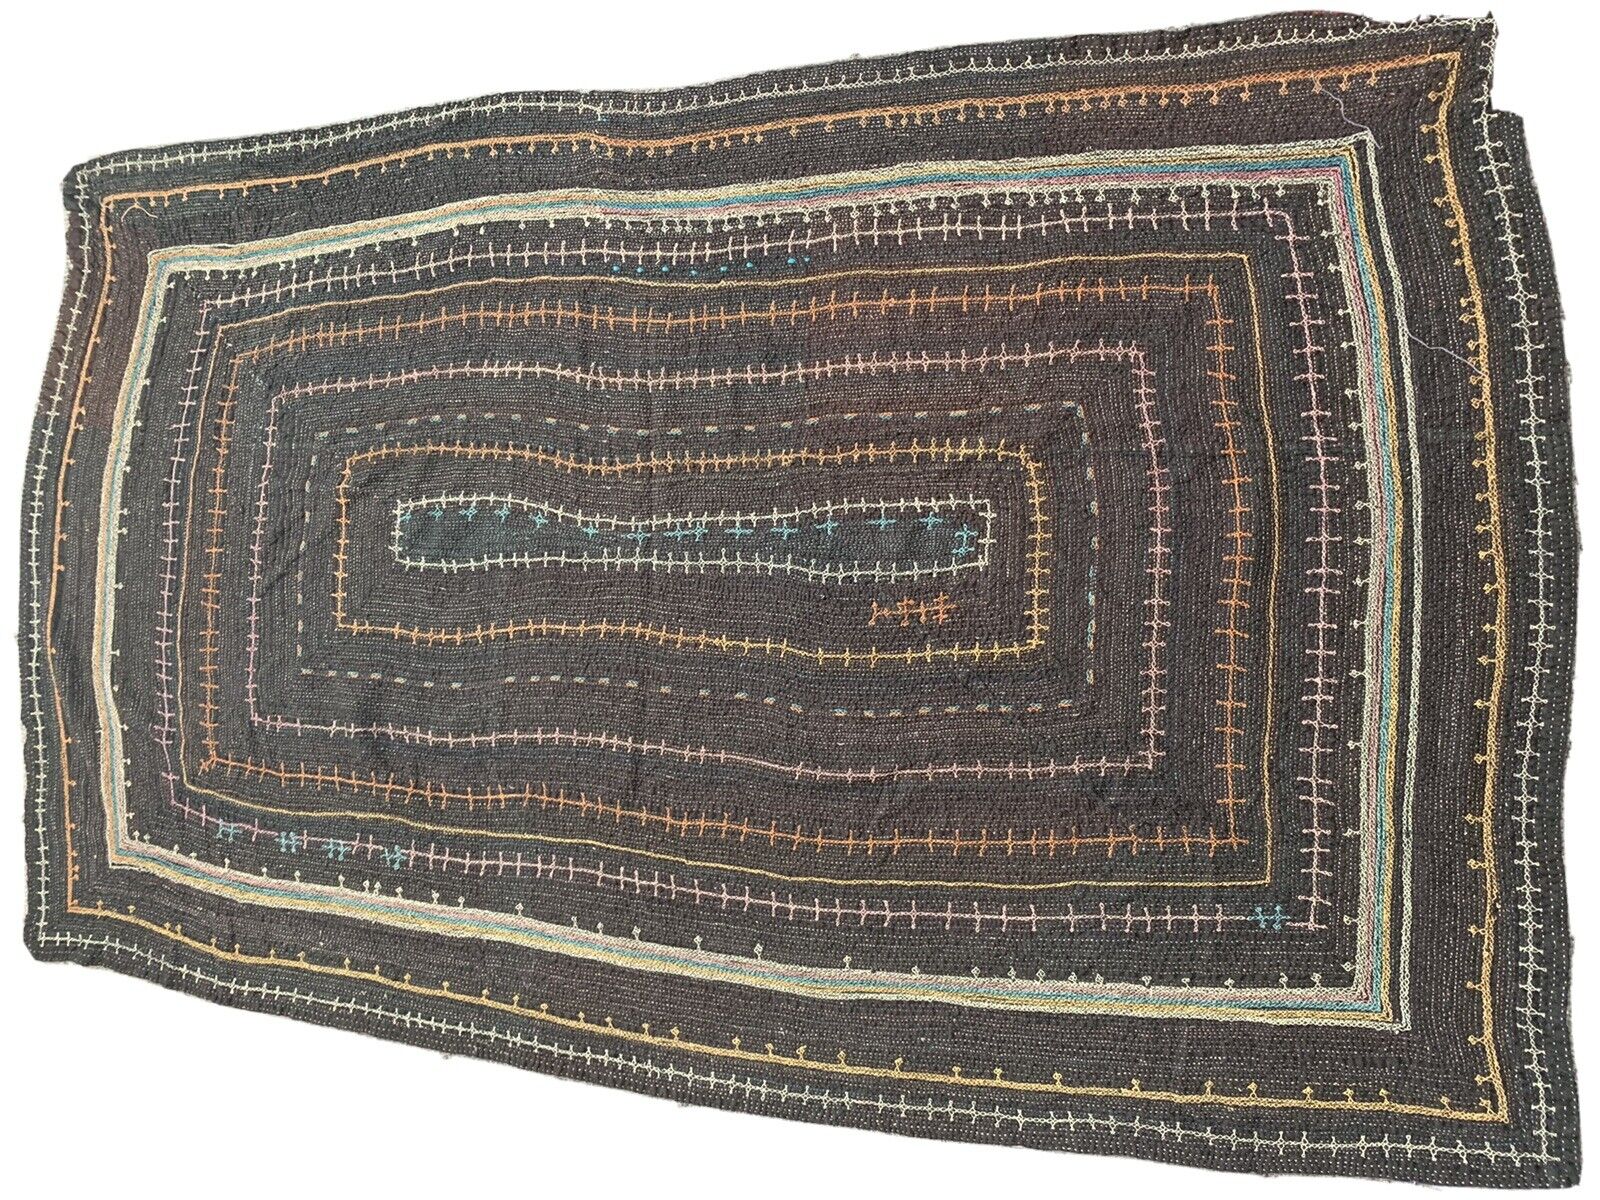 Snake Charmers Woven Bag Vintage Pakistan C1940